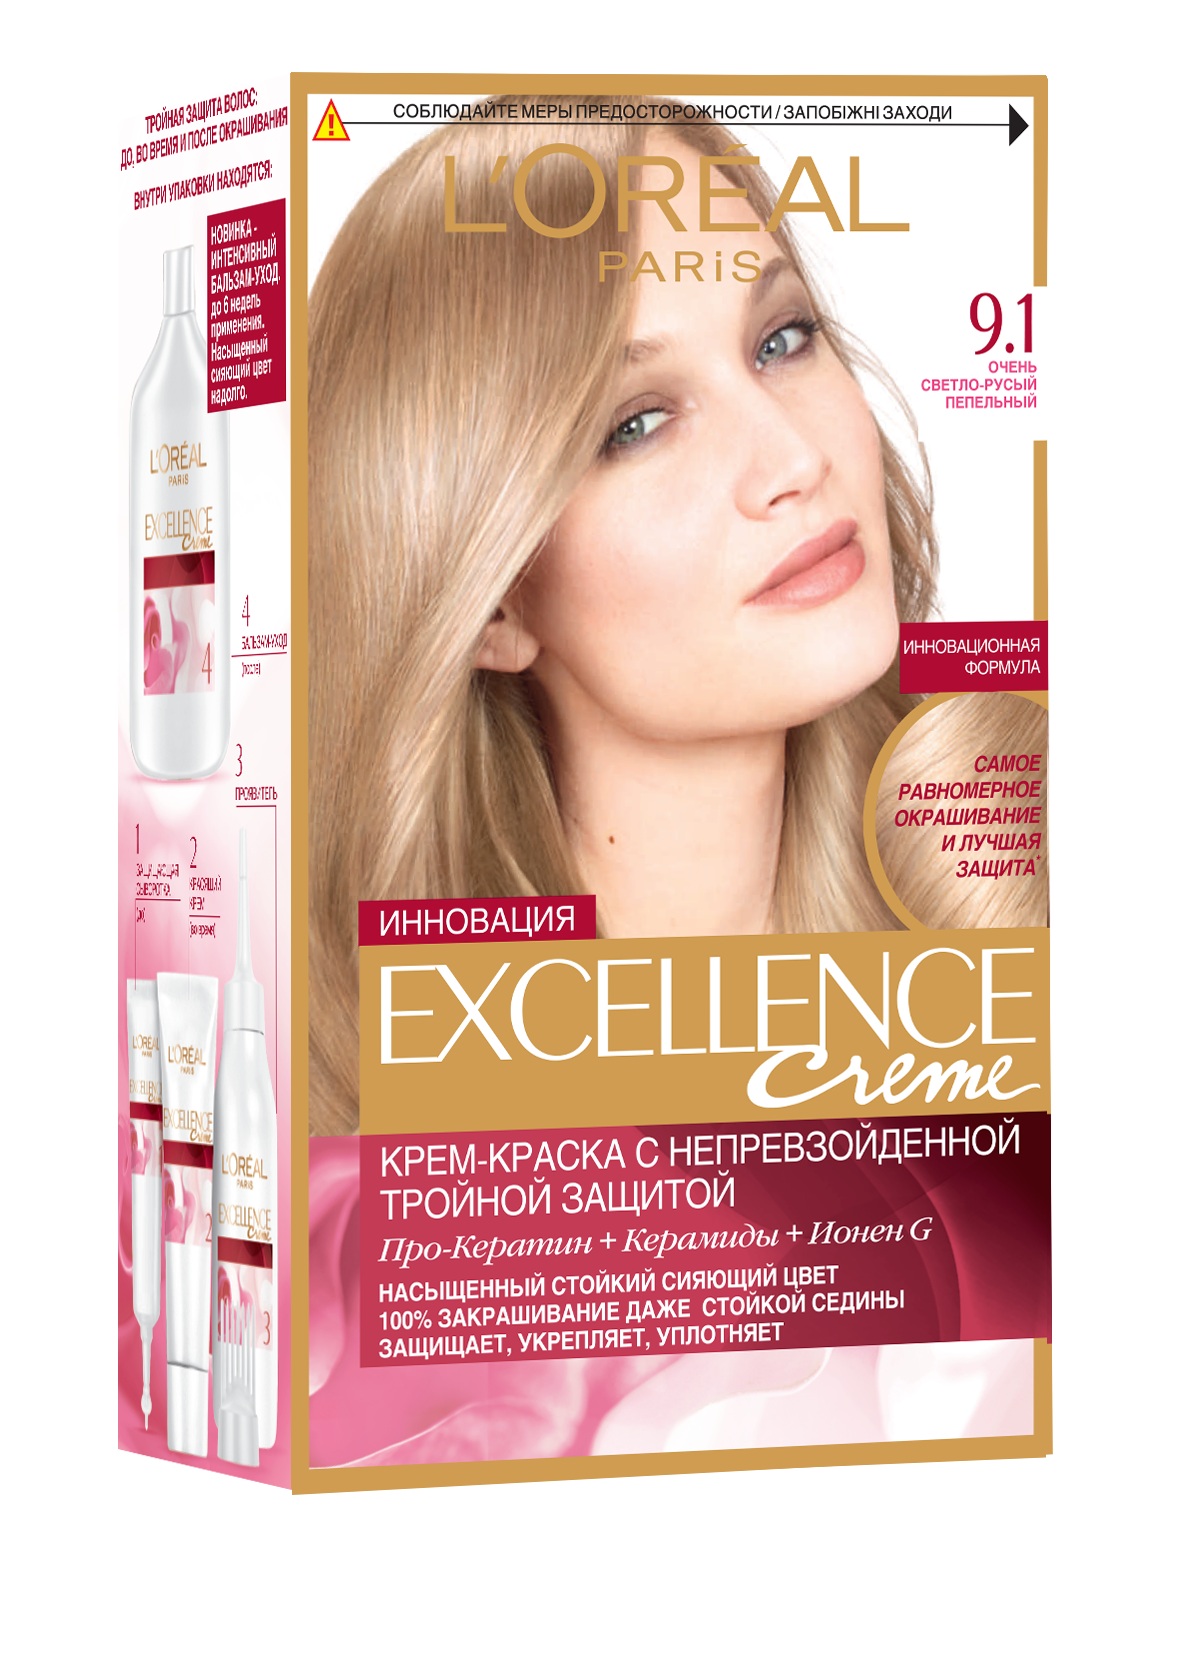 L Oréal Hair Dye / L'Oreal Excellence Creme Permanent Hair Dye - 9